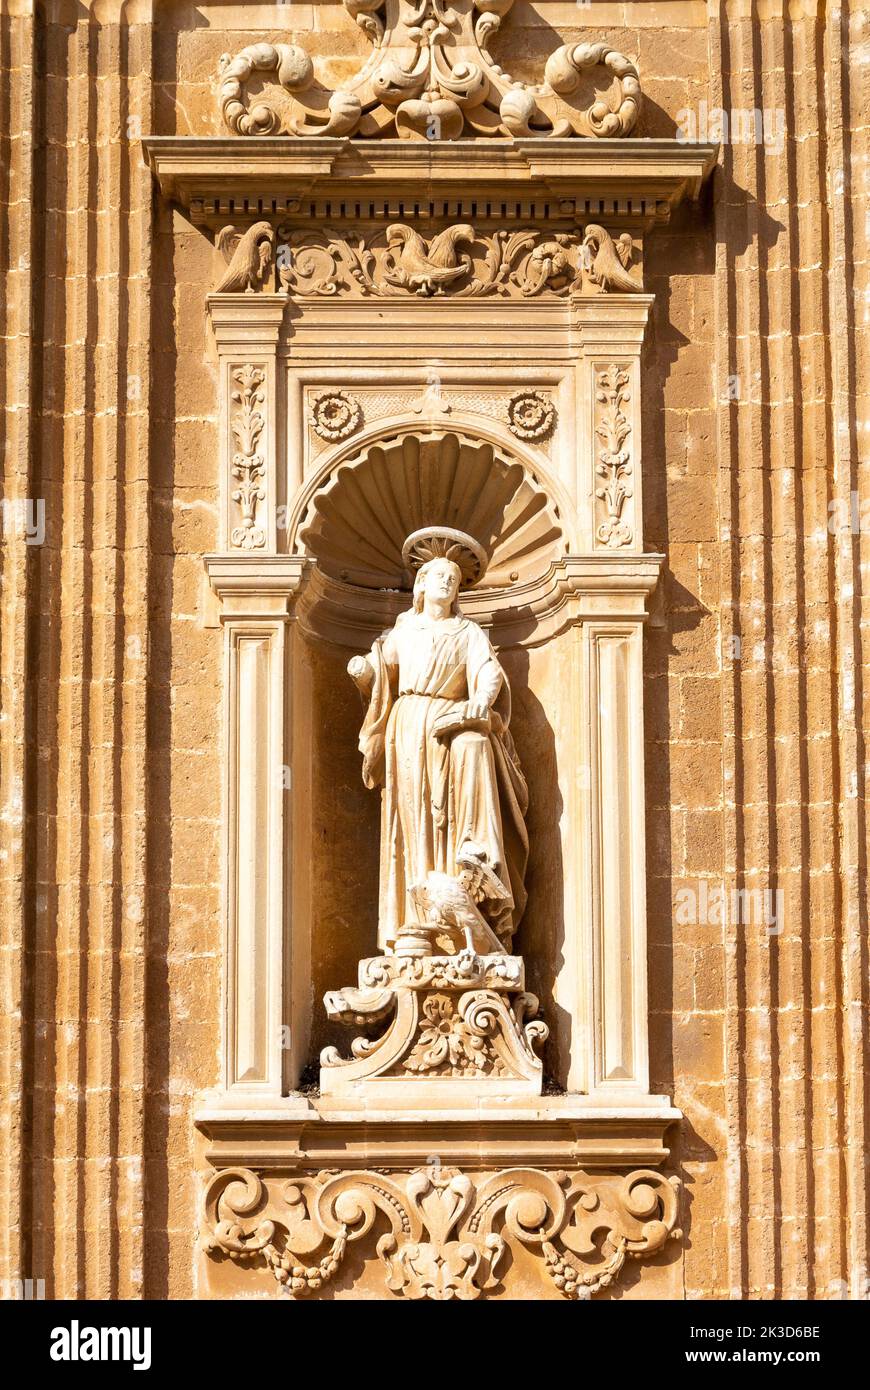 La sculpture de la façade, Sanctuario SS. Crocifisso della Pieta, Galafone, salento,Apulia,Italie du sud: Architecture baroque Banque D'Images